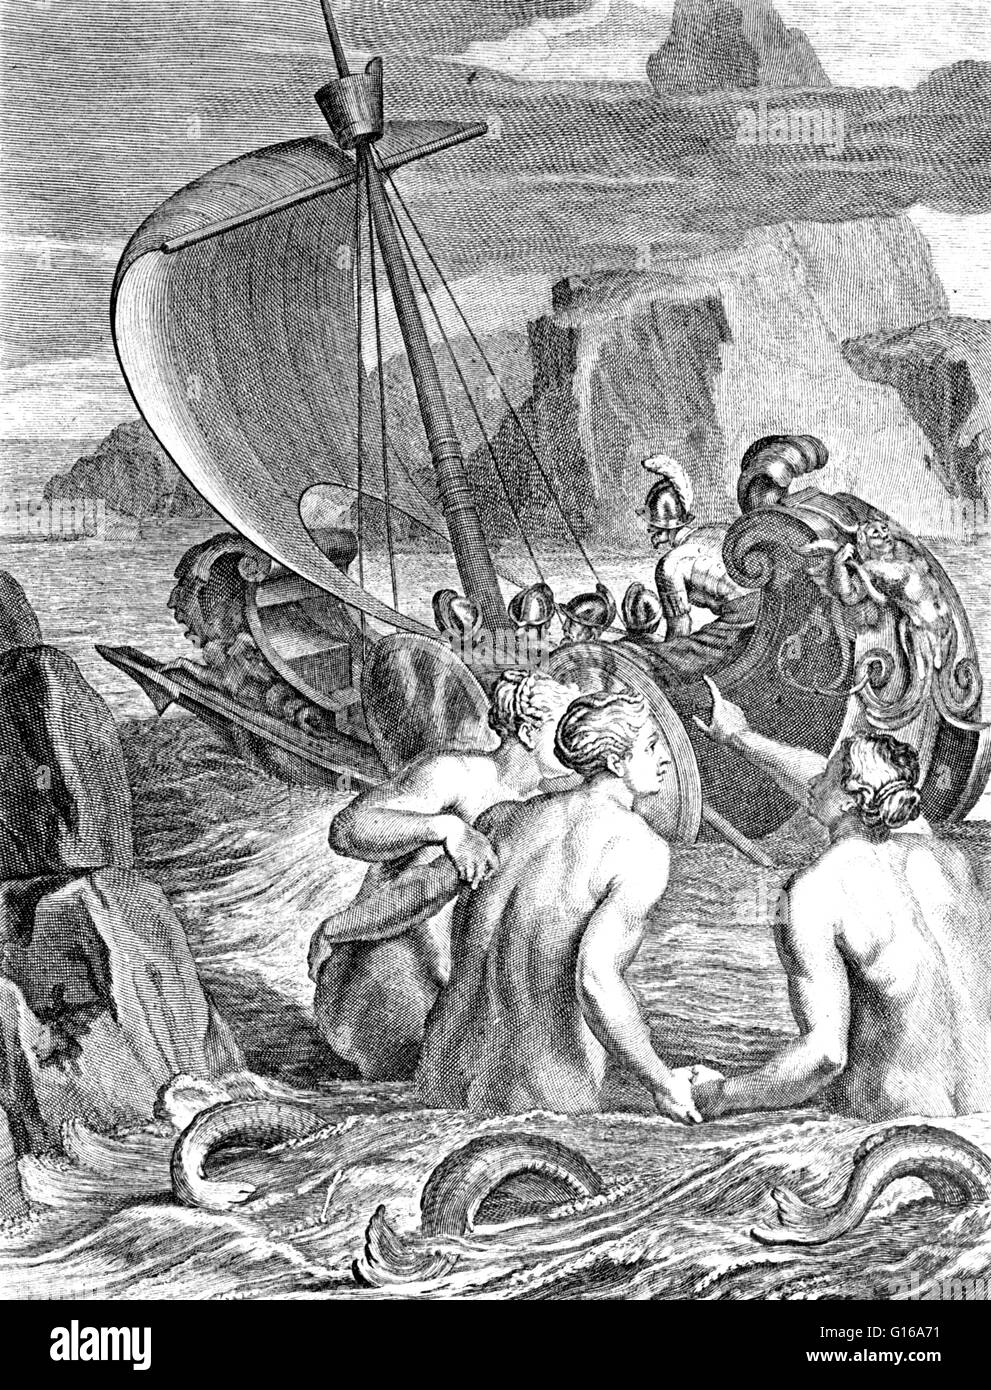 Dans la mythologie grecque, les sirènes sont dangereuses et belles créatures, présentée comme femme fatales qui ont attiré les marins à proximité avec leurs voix et musique enchanteresse de naufrage sur la côte rocheuse de l'île. Ils étaient auparavant des servantes de la déesse Banque D'Images